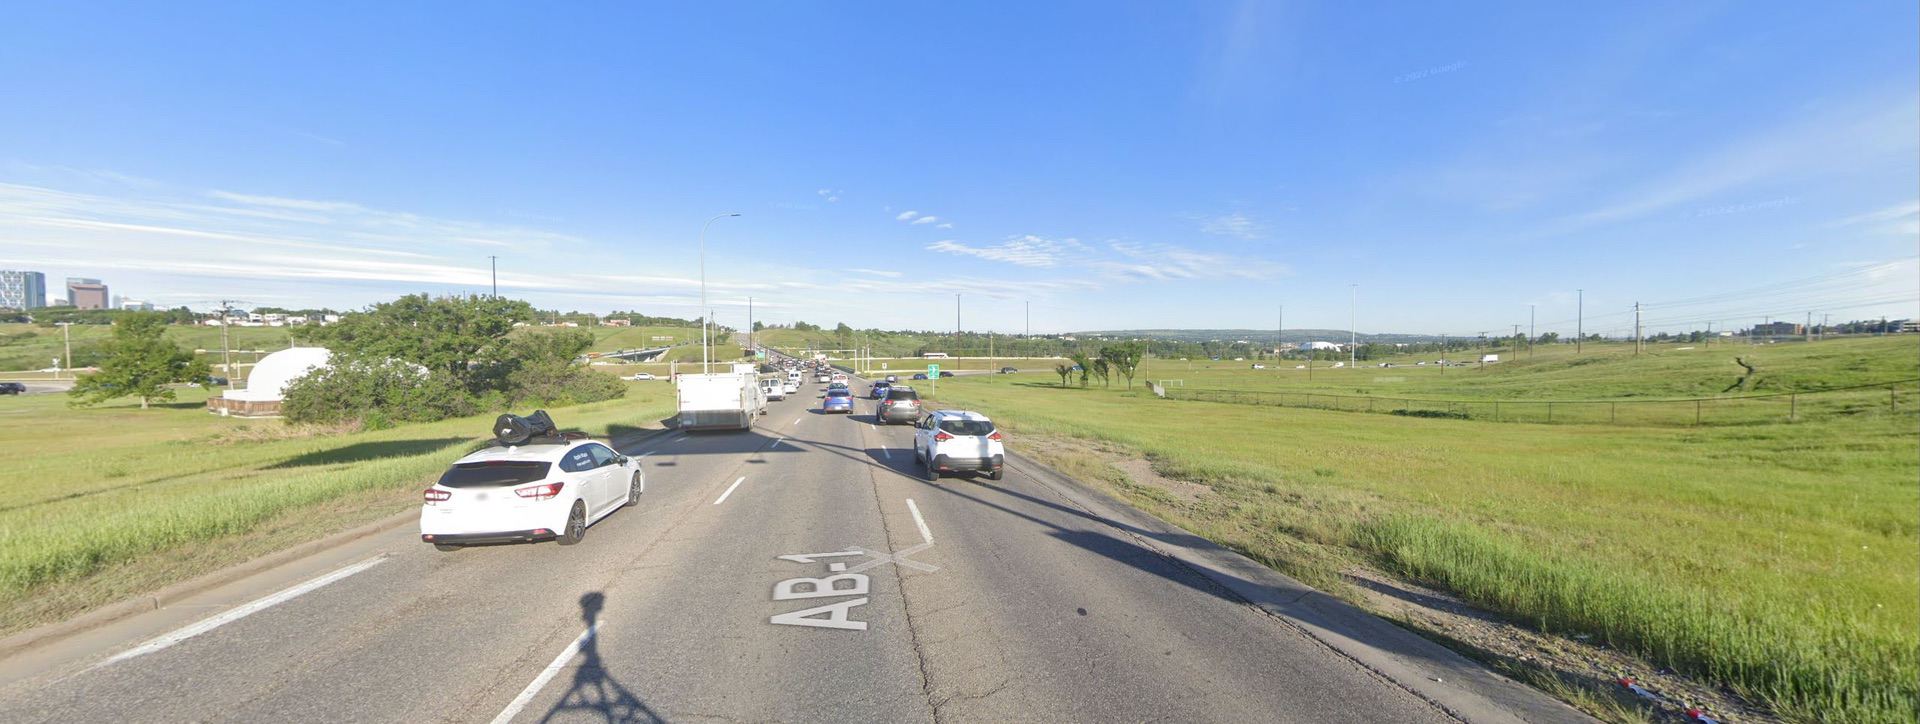 Highway on Google Street View in Calgary, Alberta